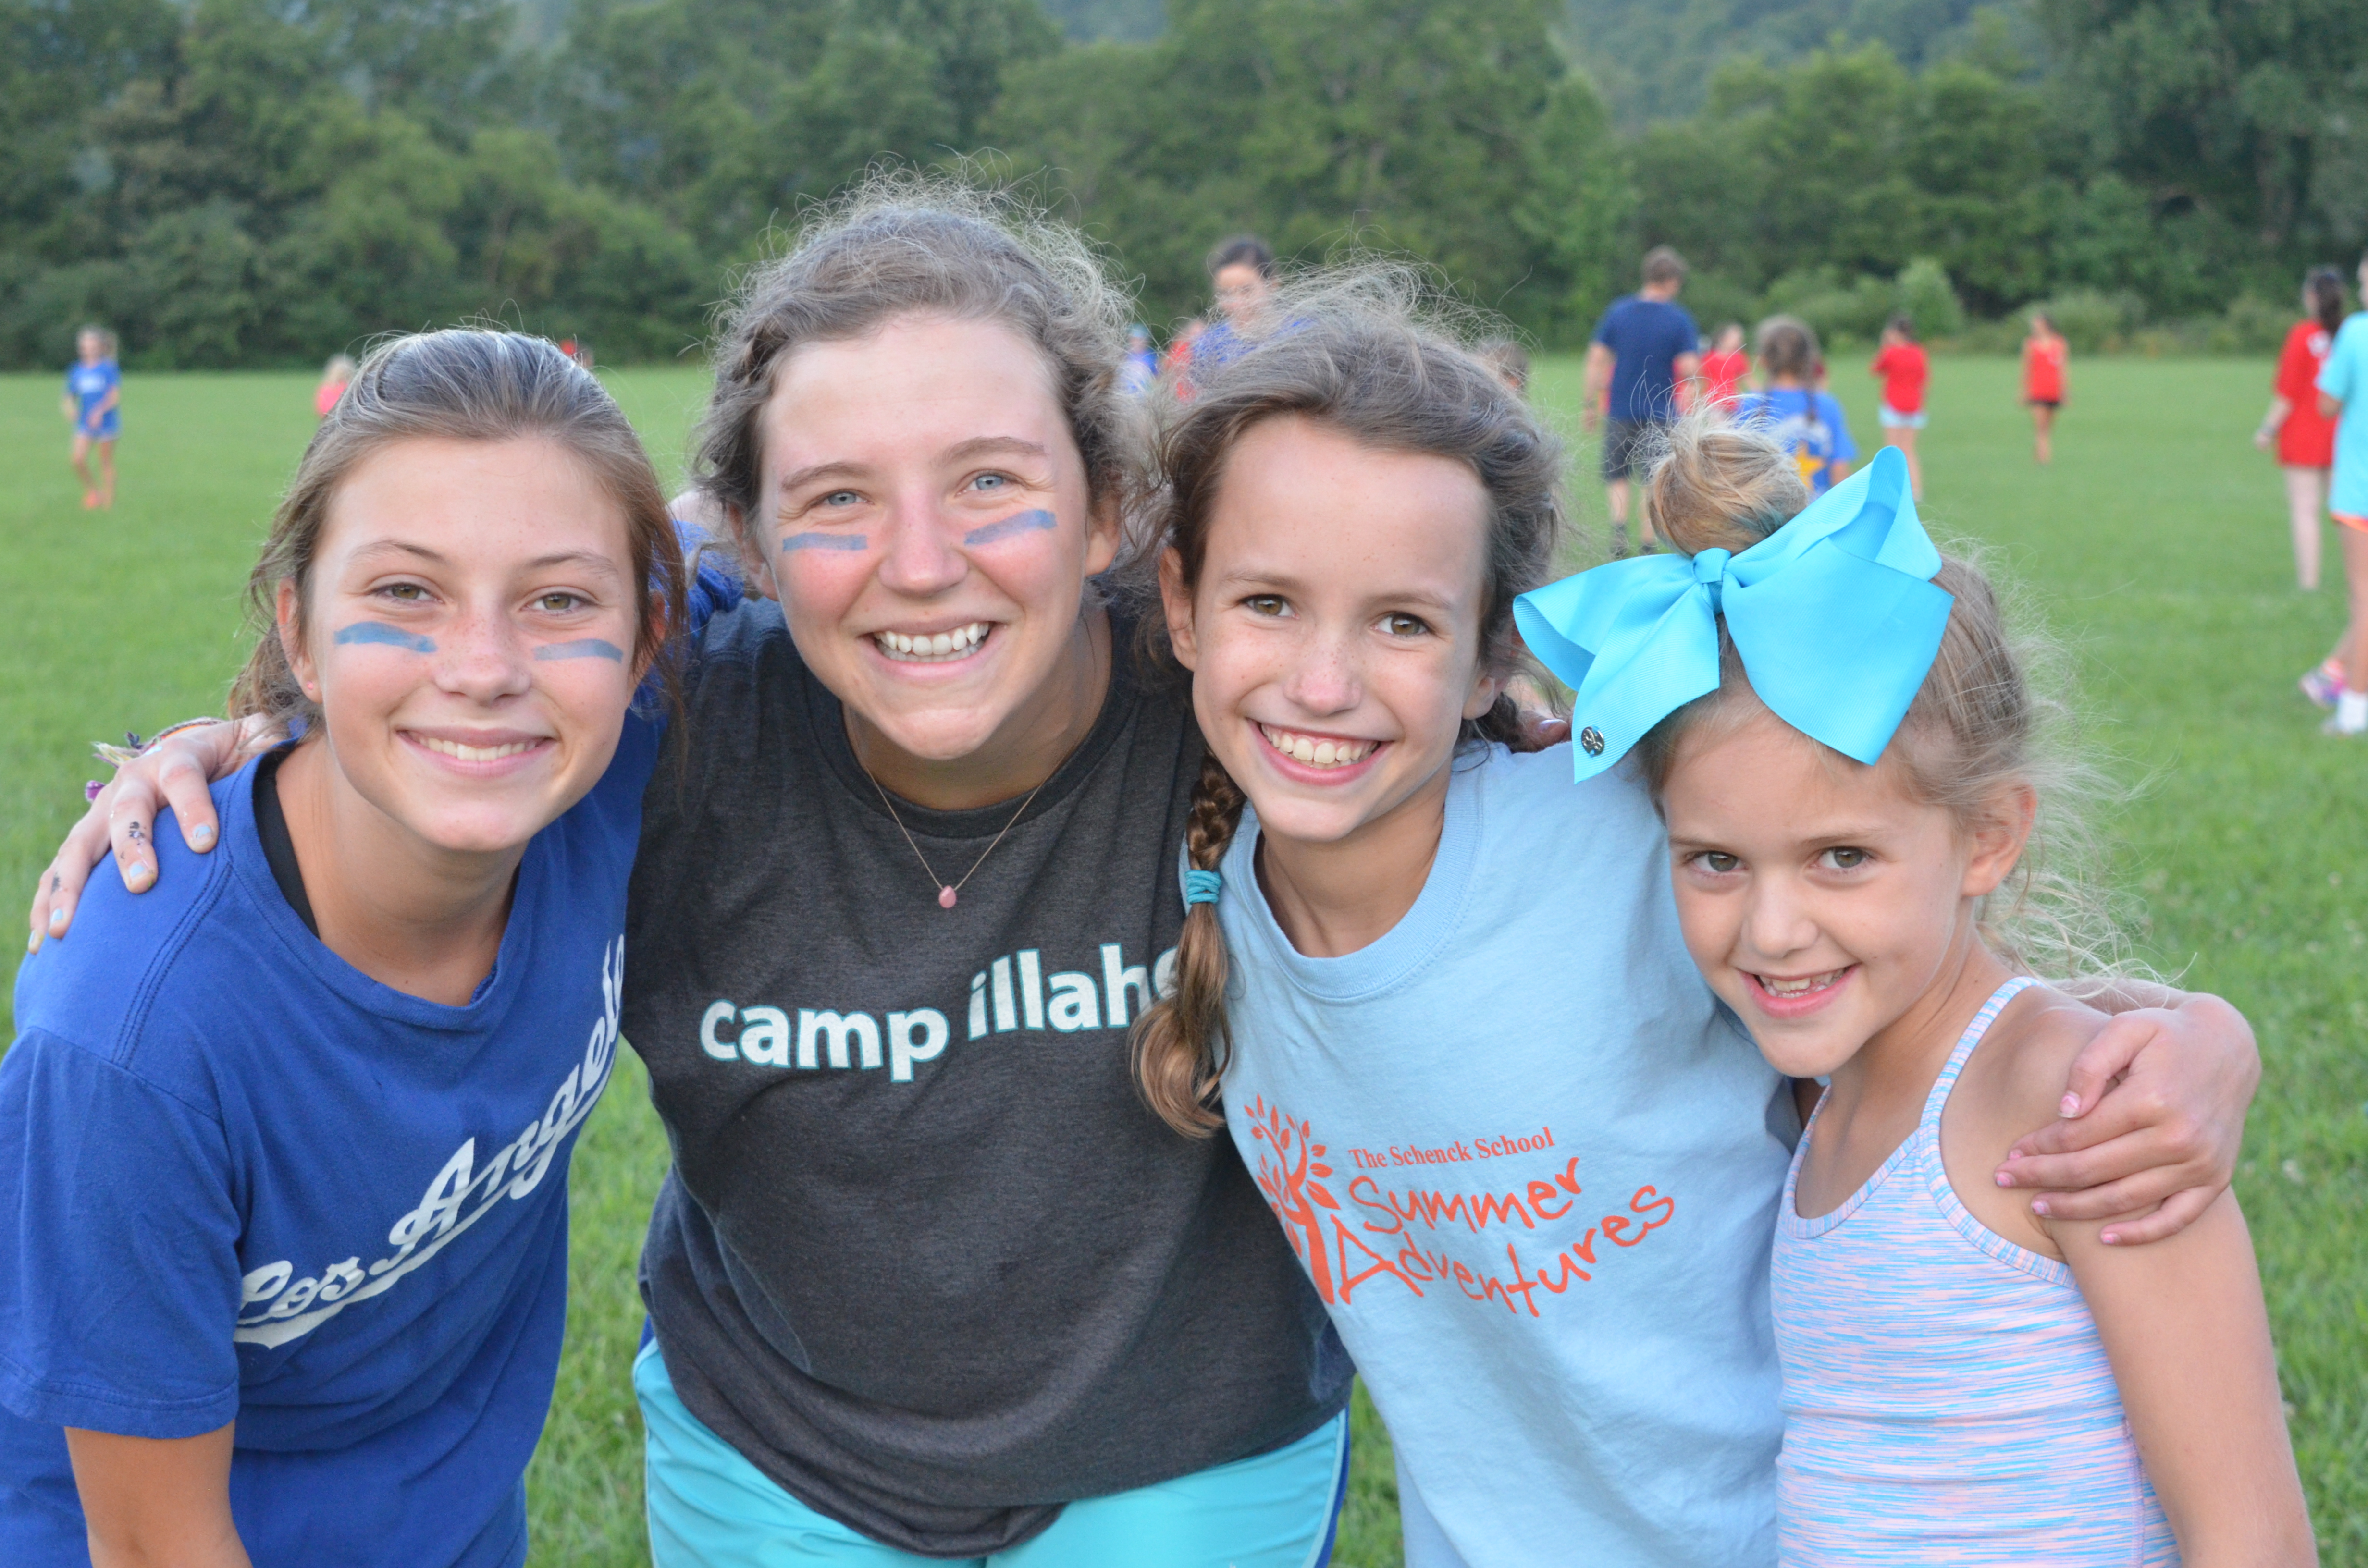 Girls Summer Camp At Camera Telegraph